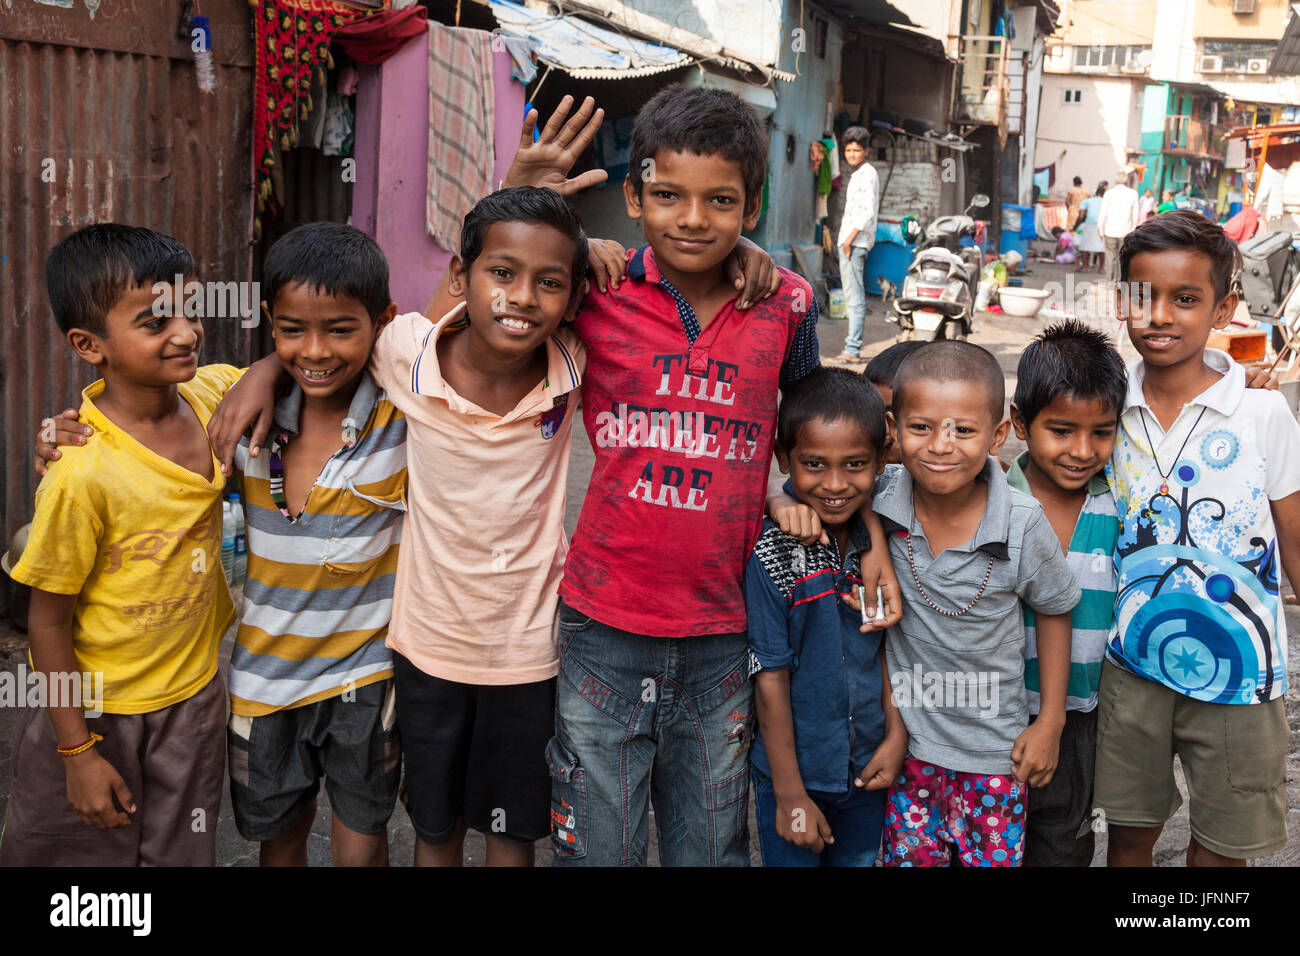 Children in south Mumbai, India Stock Photo